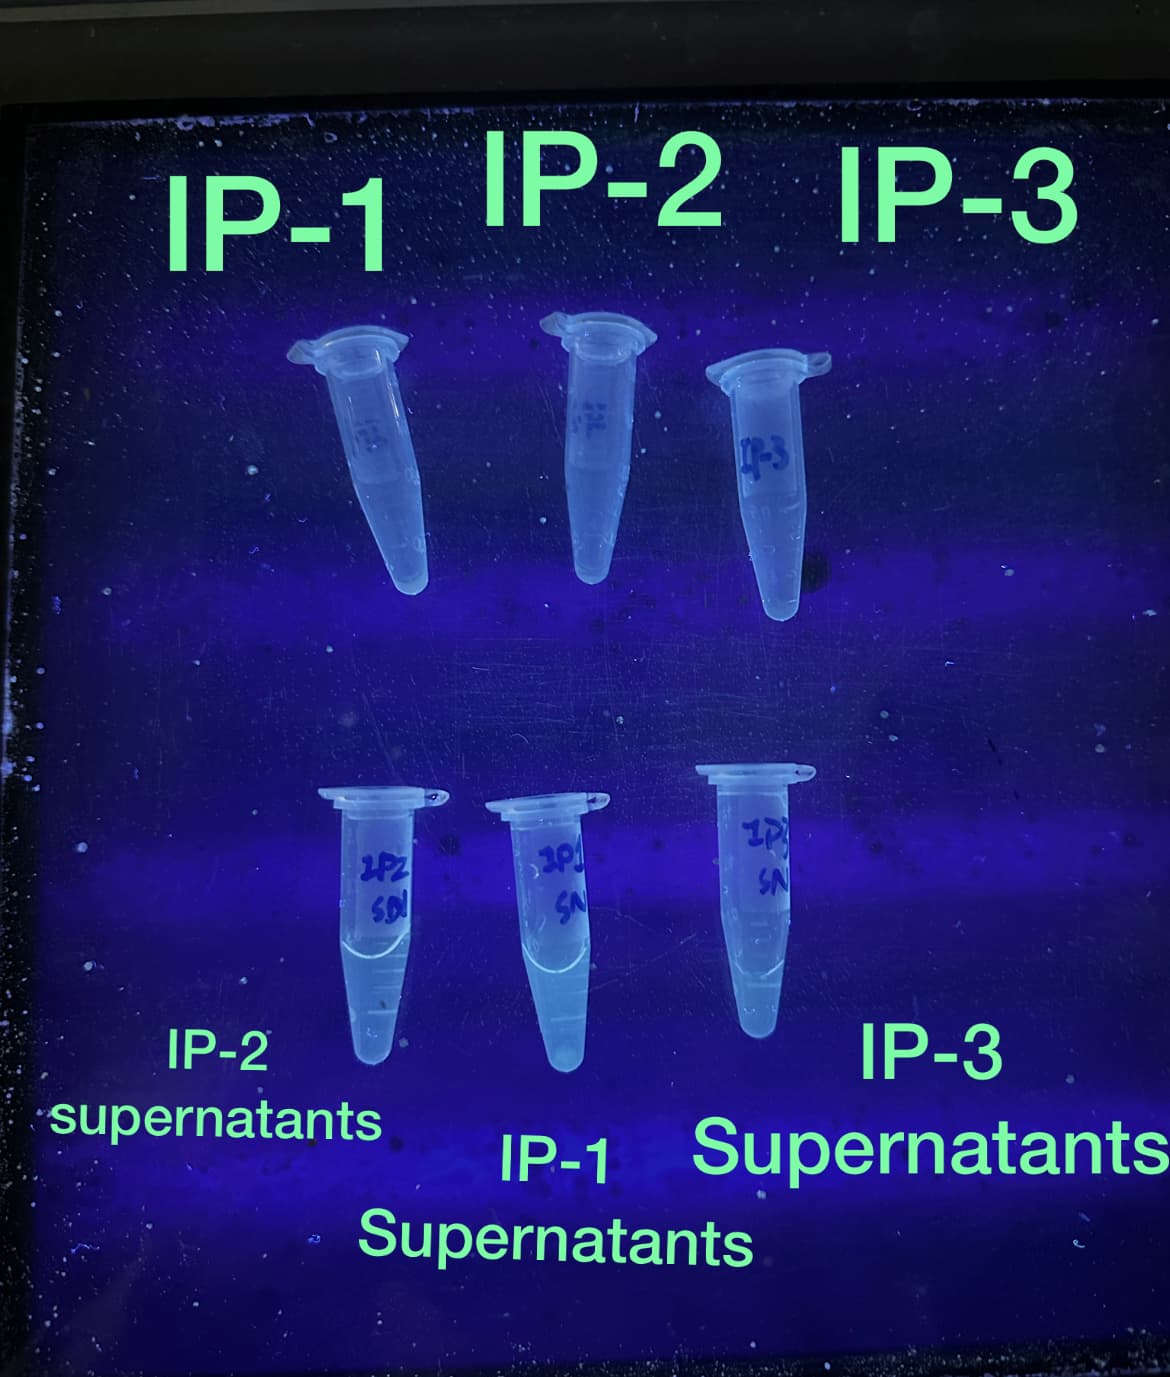 IP-1
IP-2 IP-3
171
2PZ
SA
201
SA
SN
IP-2
IP-3
supernatants IP-1 Supernatants
Supernatants